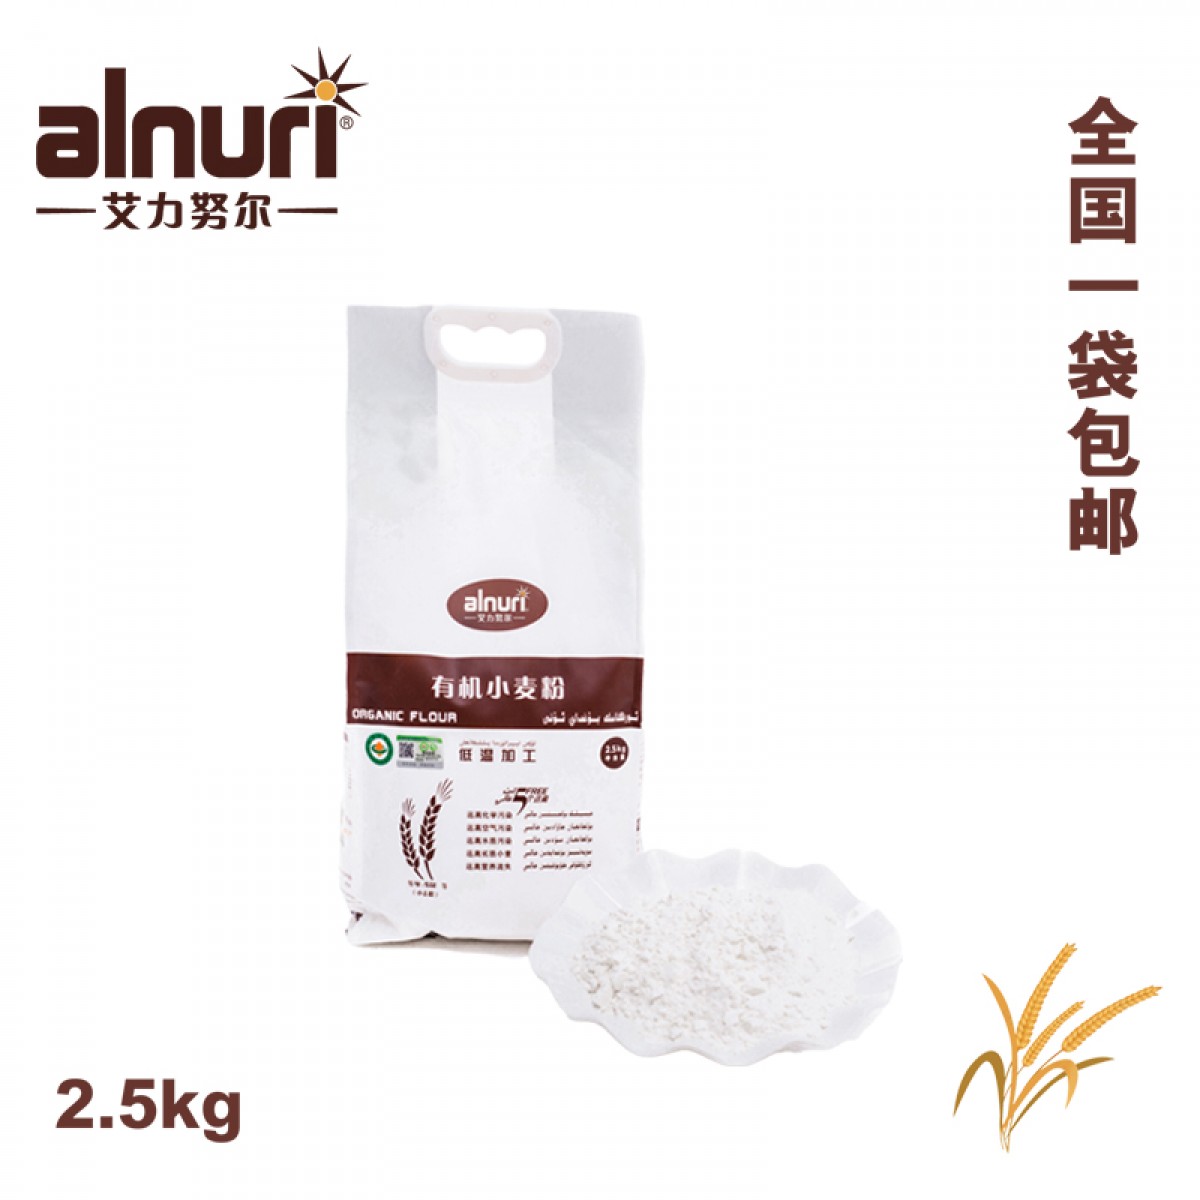 新疆艾力努尔有机小麦粉 2.5公斤 有机面粉